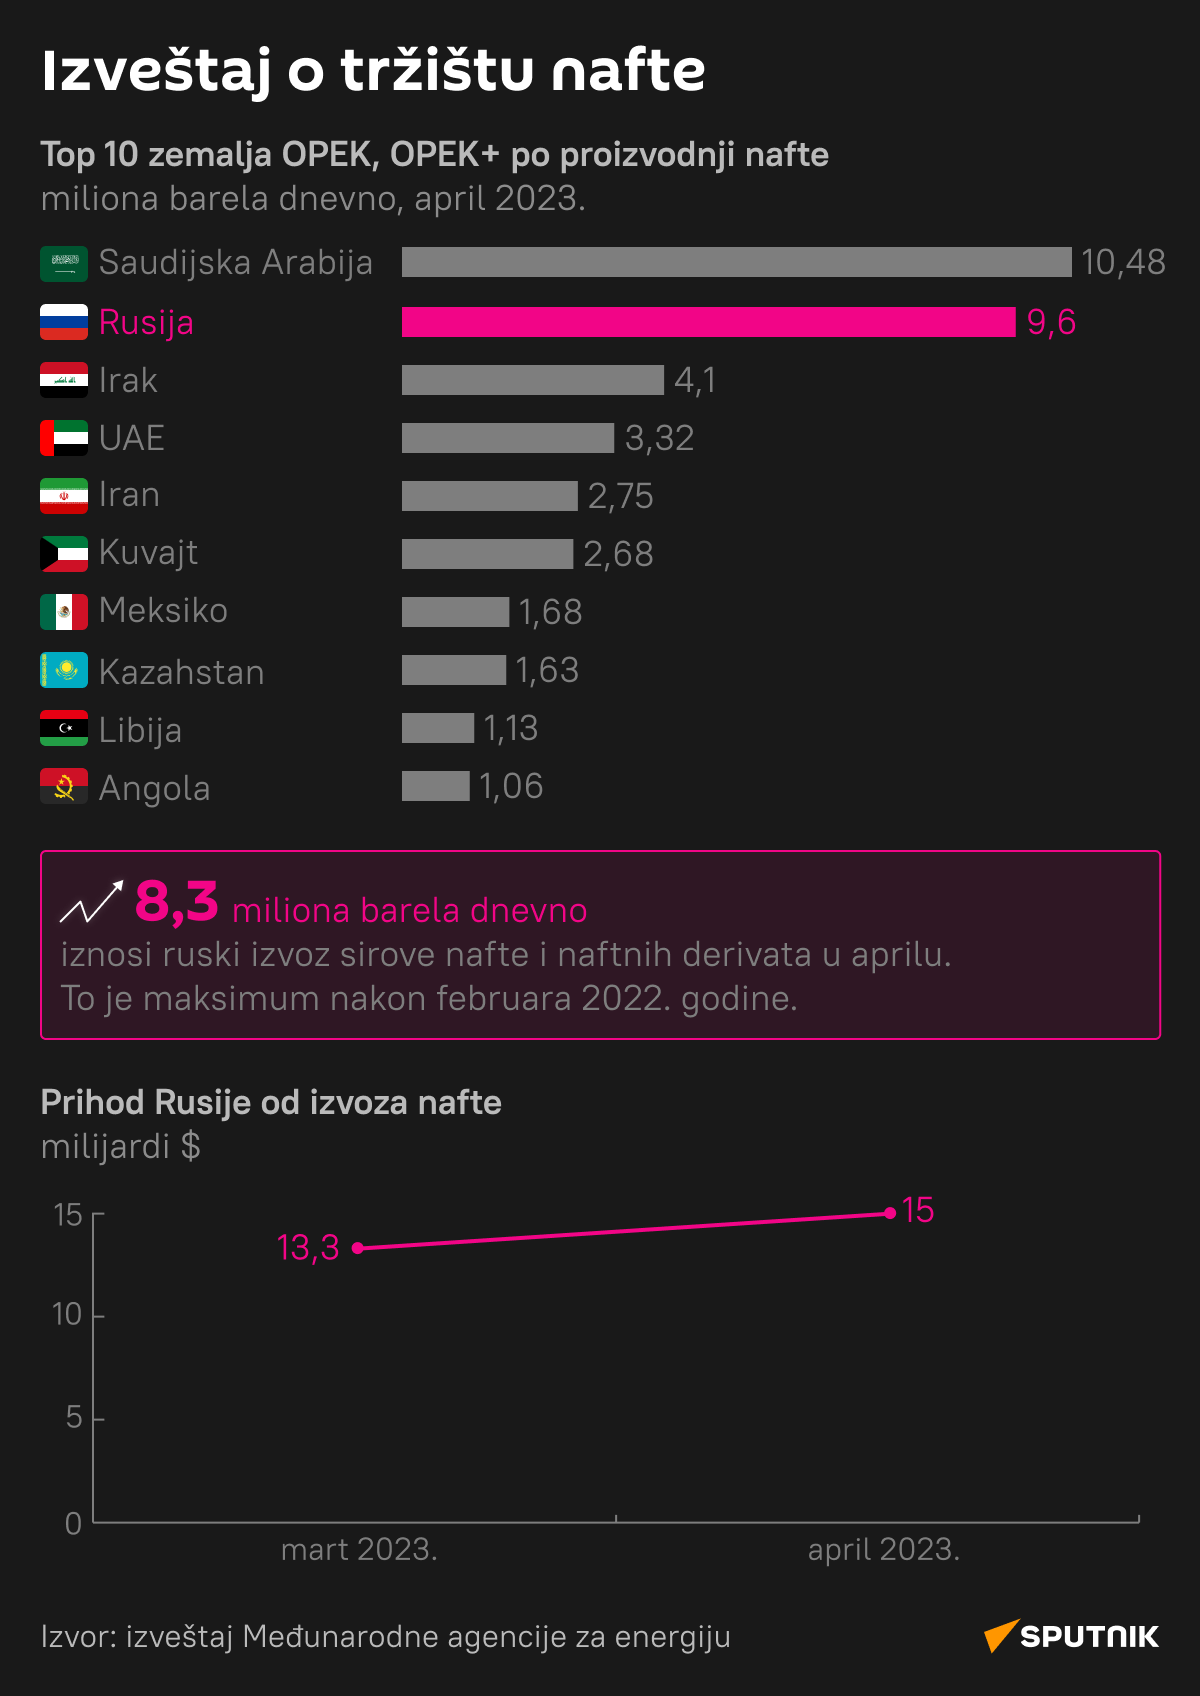 Infografika Izveštaj o tržištu nafte Latinica desk - Sputnik Srbija